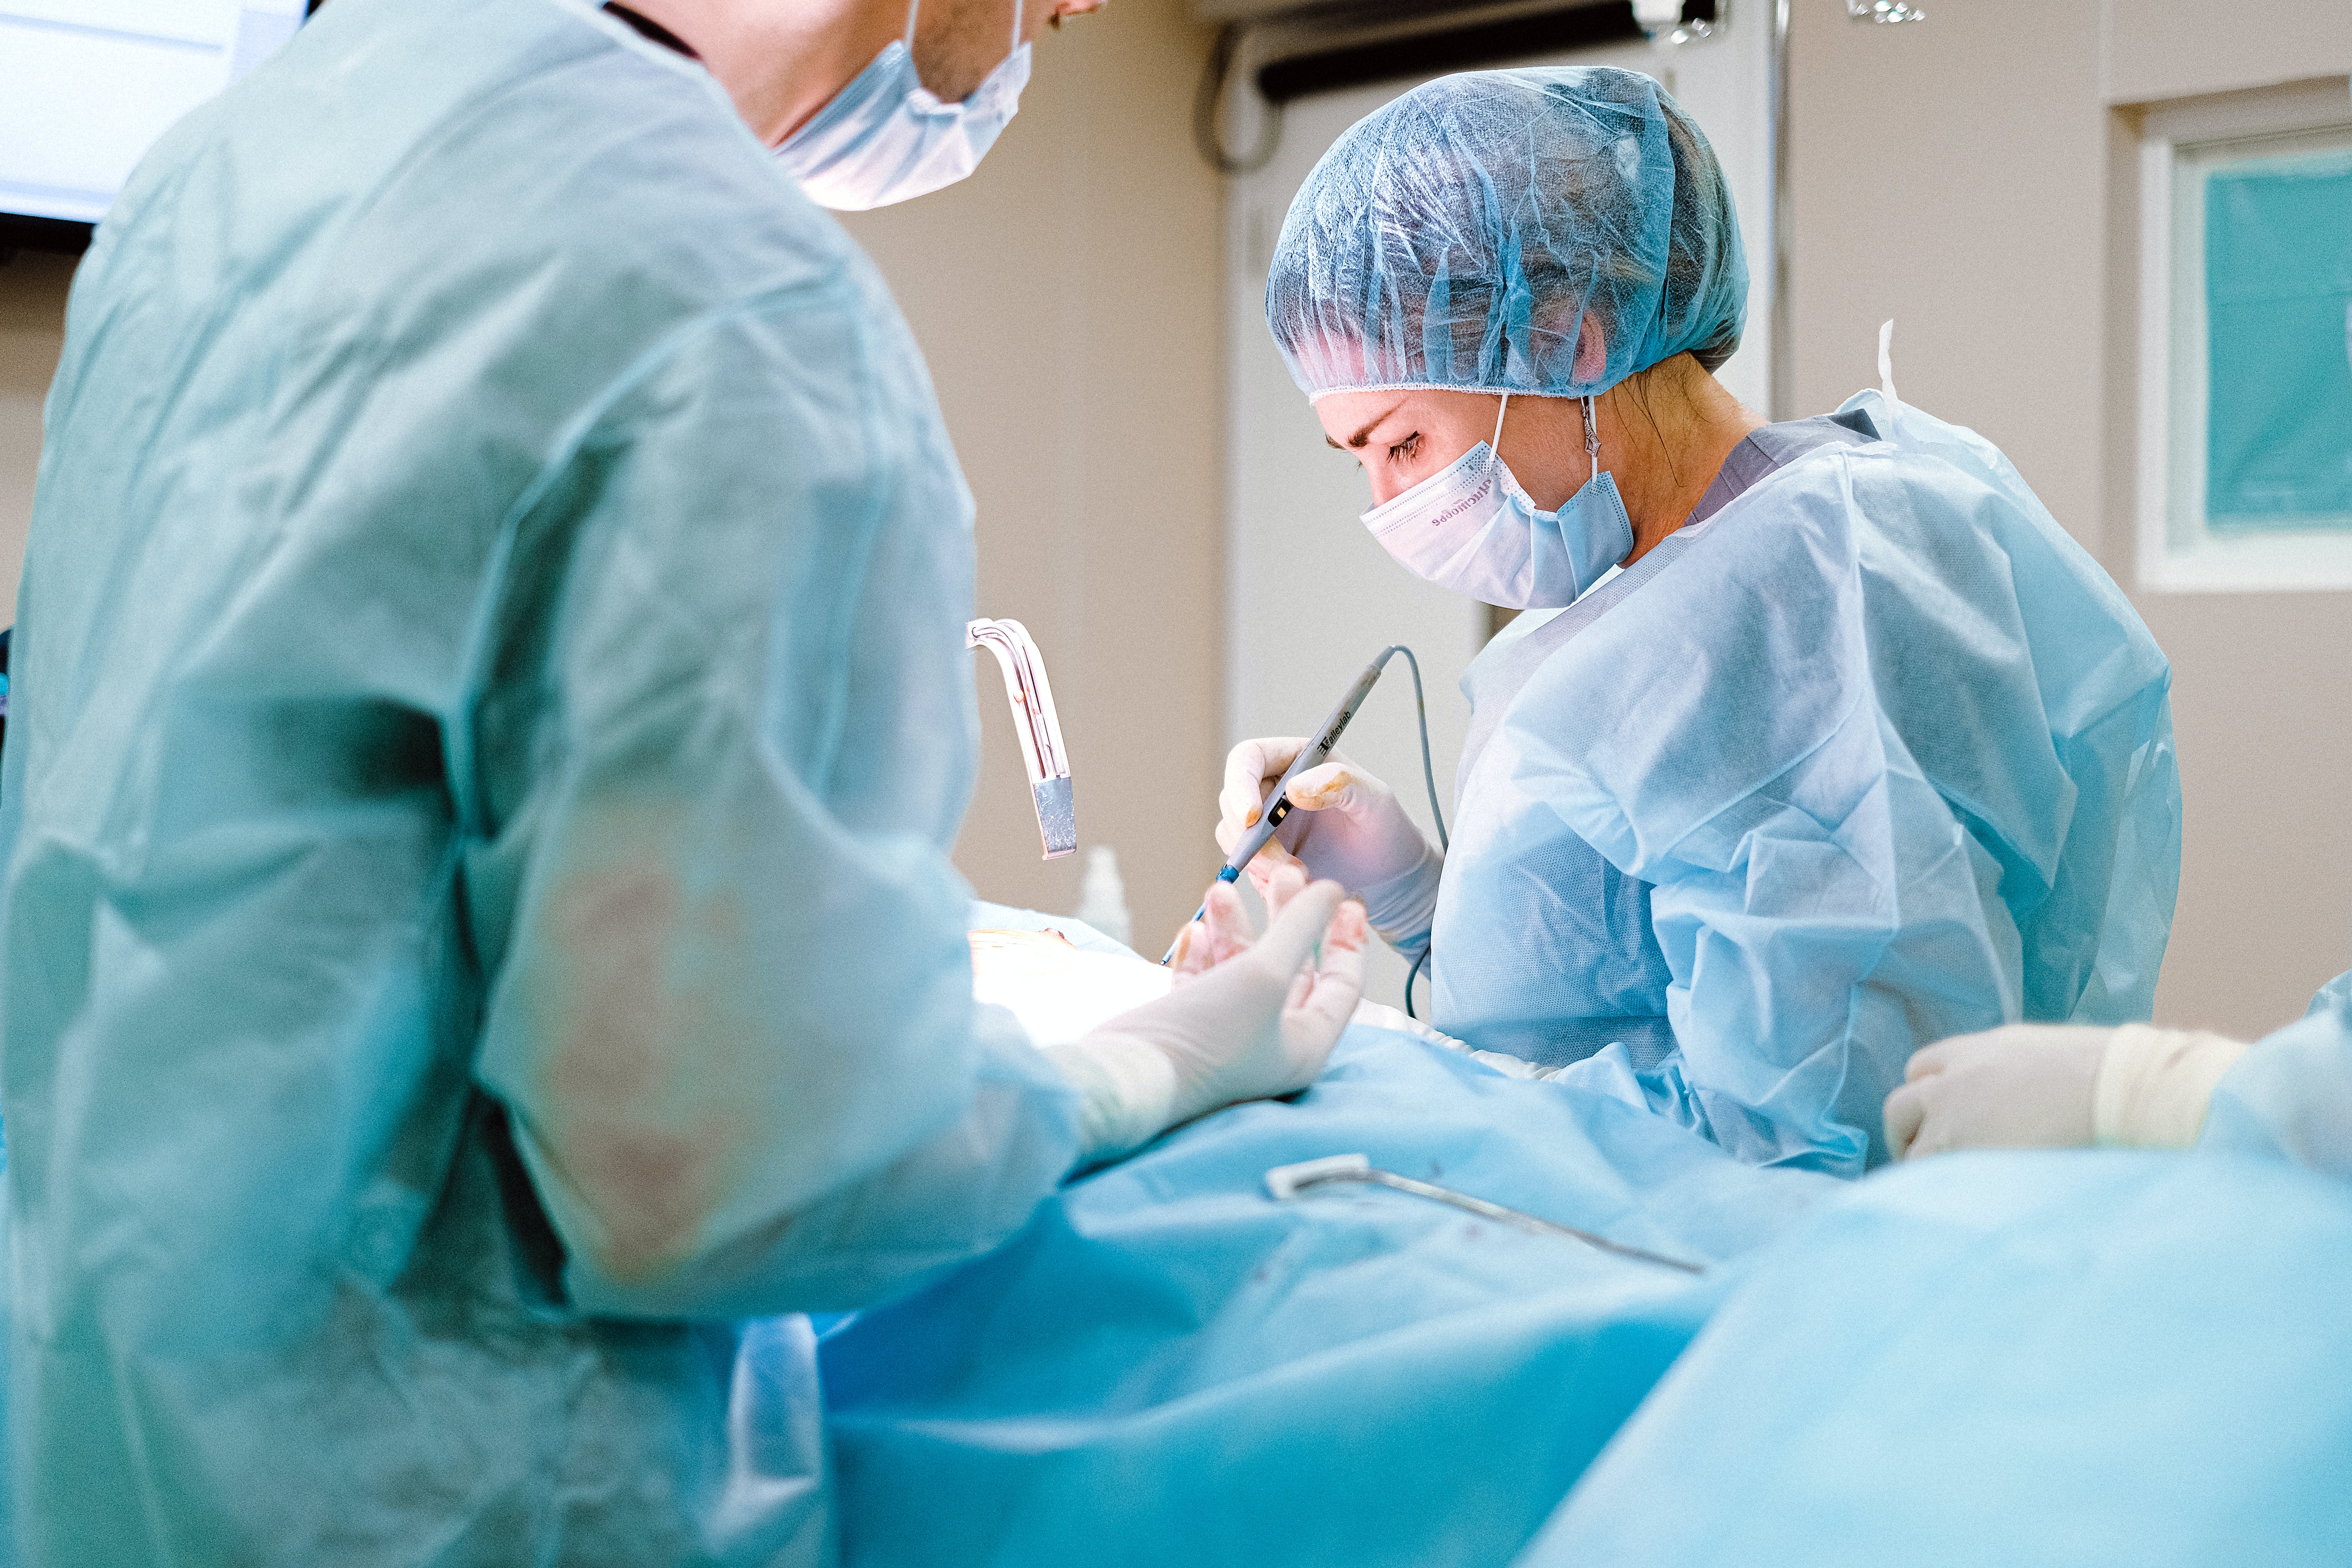 Des médecins effectuant une opération chirurgicale | Source : Pexels